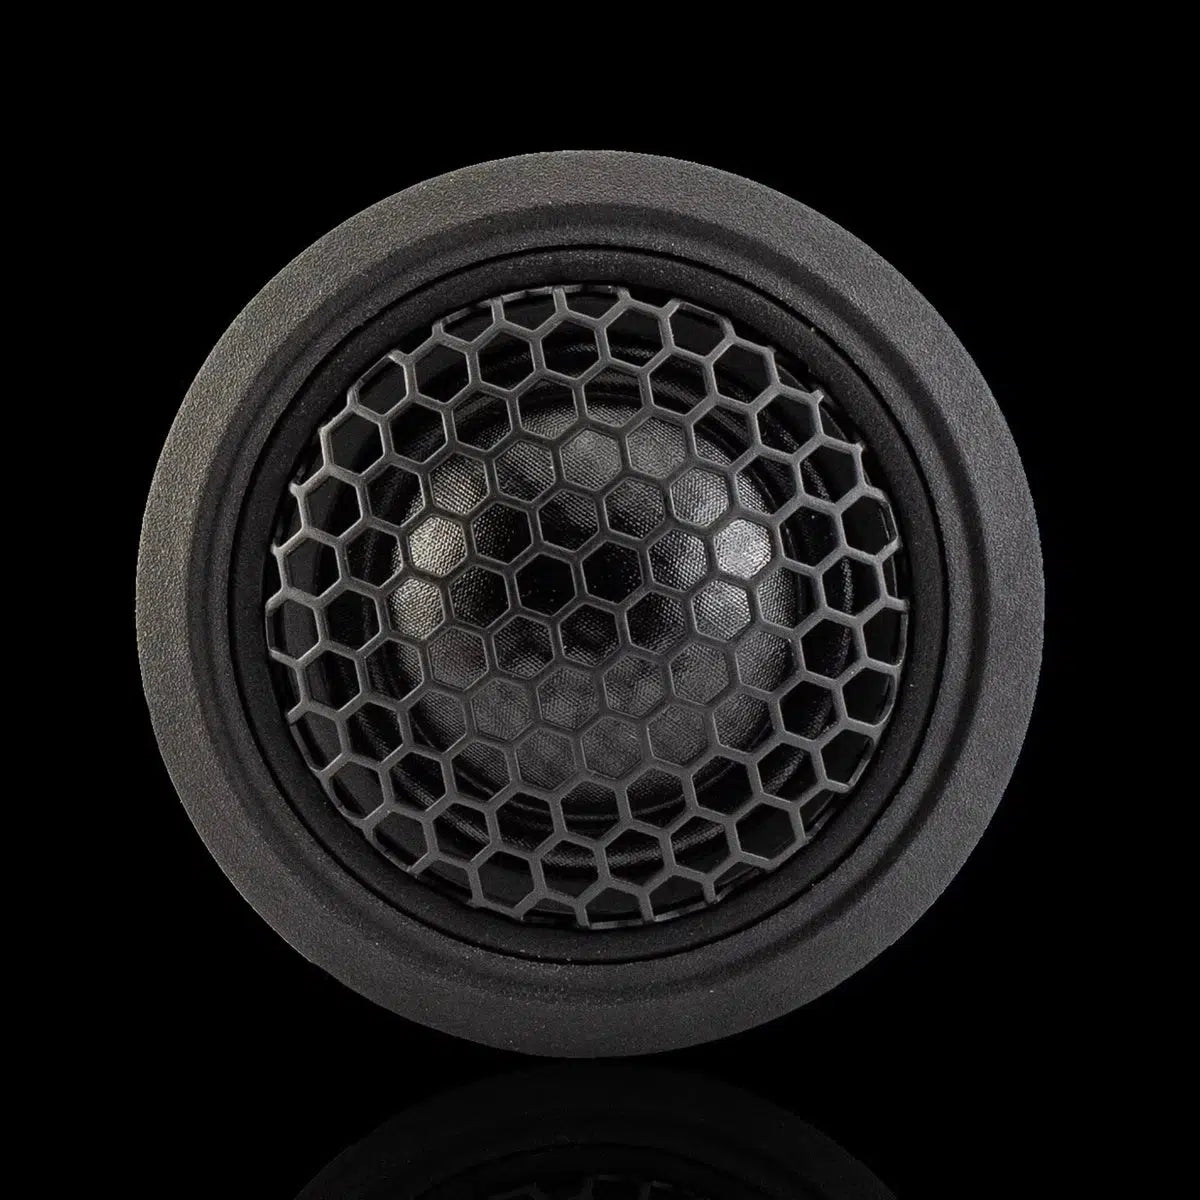 Gladen-RS 165 Speed G2-6.5" (16,5cm) speaker set-Masori.de